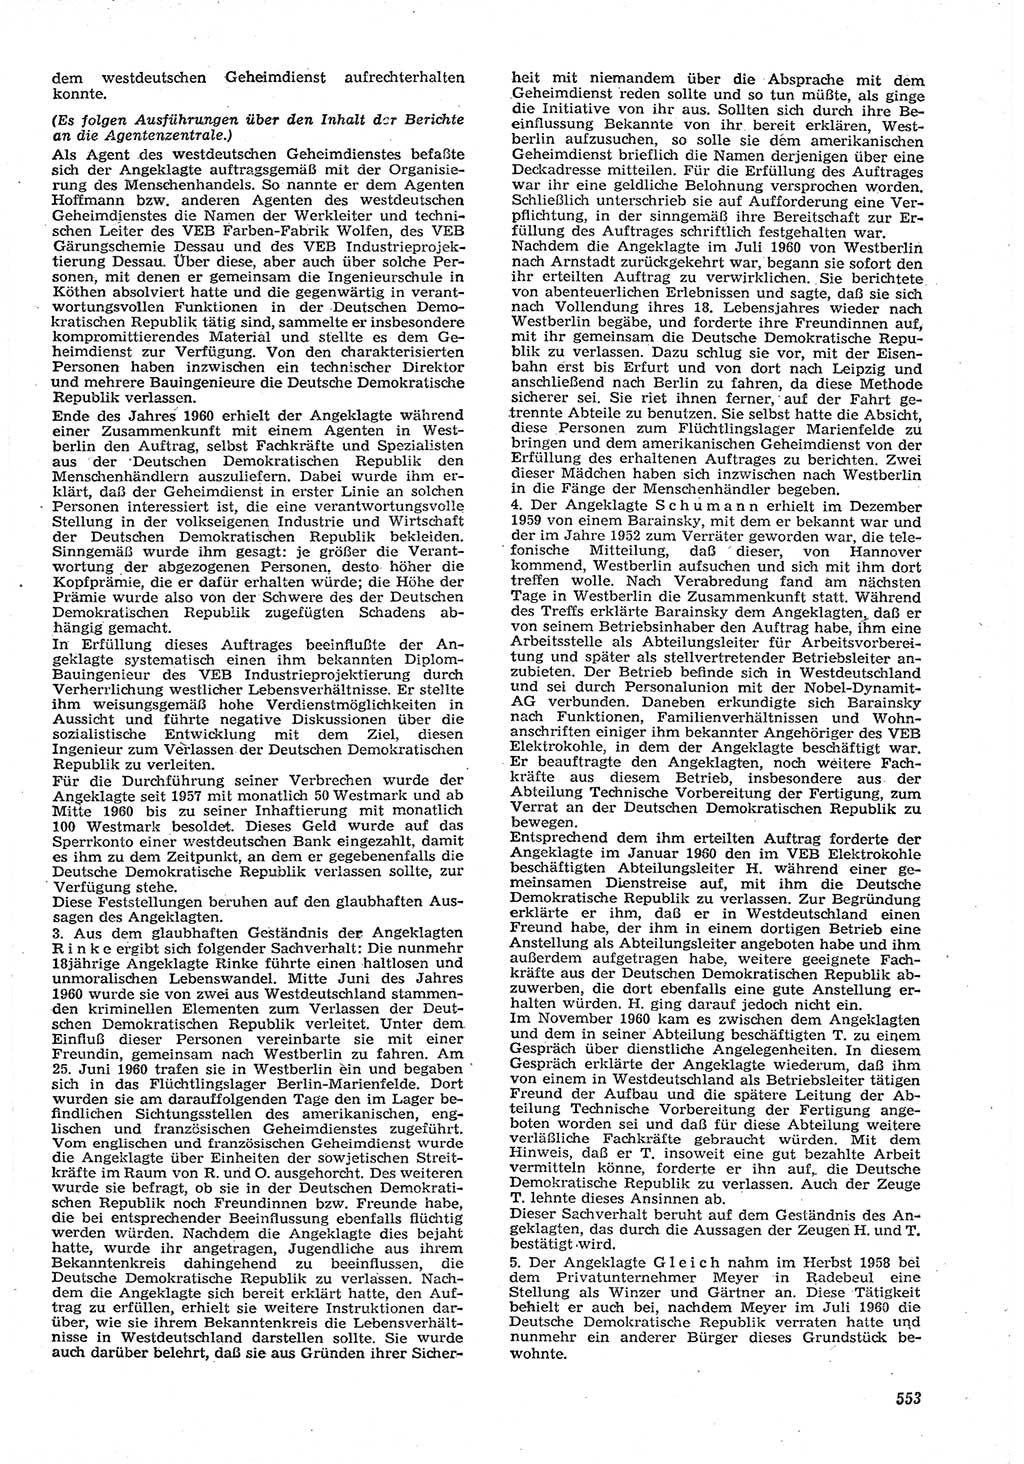 Neue Justiz (NJ), Zeitschrift für Recht und Rechtswissenschaft [Deutsche Demokratische Republik (DDR)], 15. Jahrgang 1961, Seite 553 (NJ DDR 1961, S. 553)